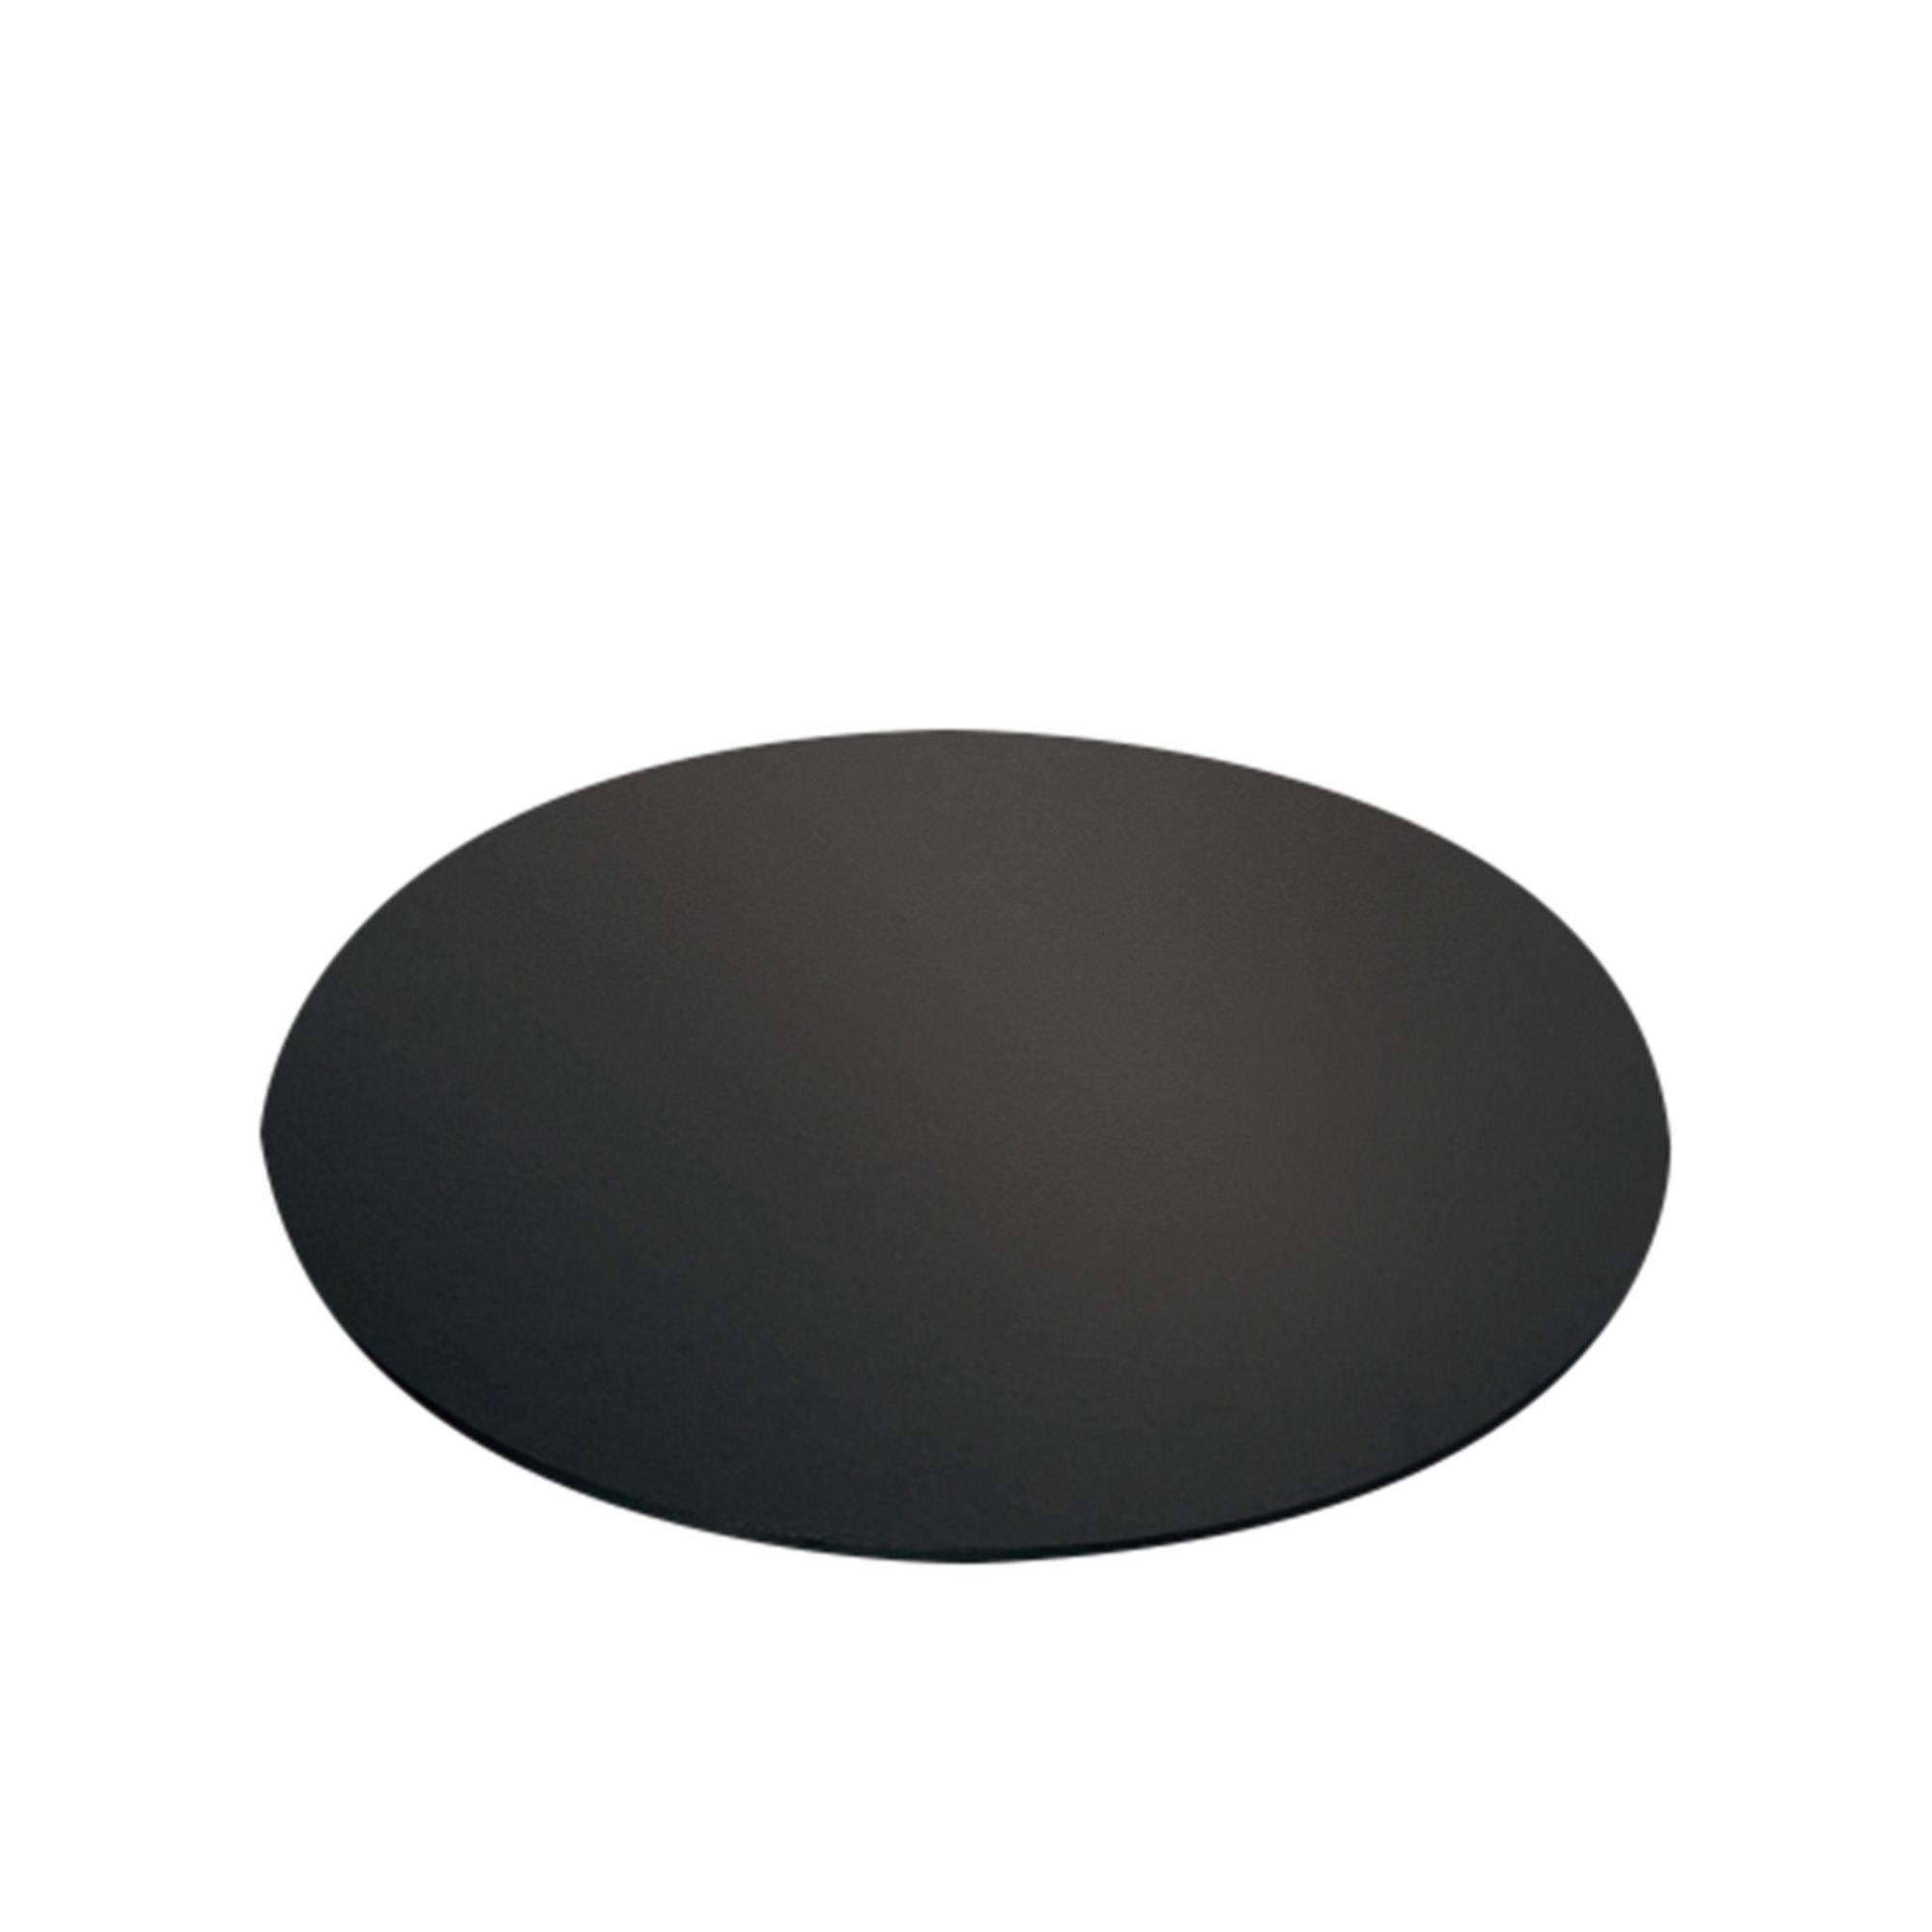 Mondo Round Cake Board 30cm Black Image 1